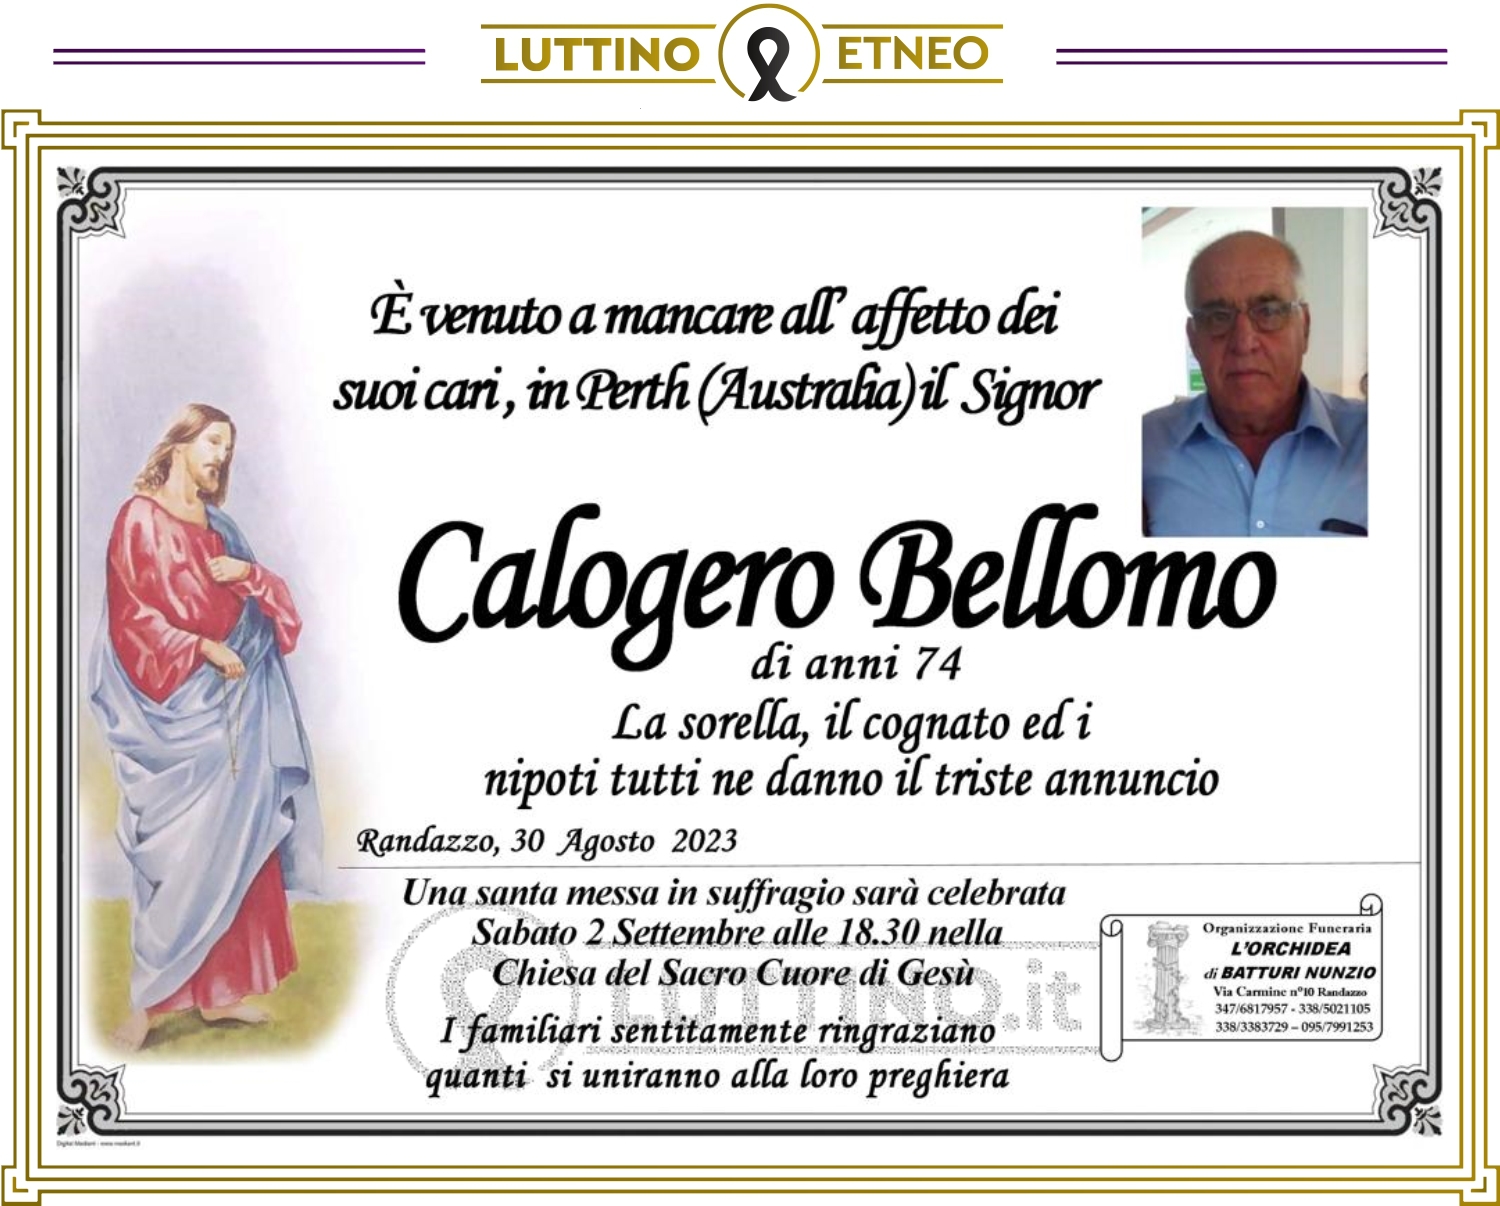 Calogero Bellomo